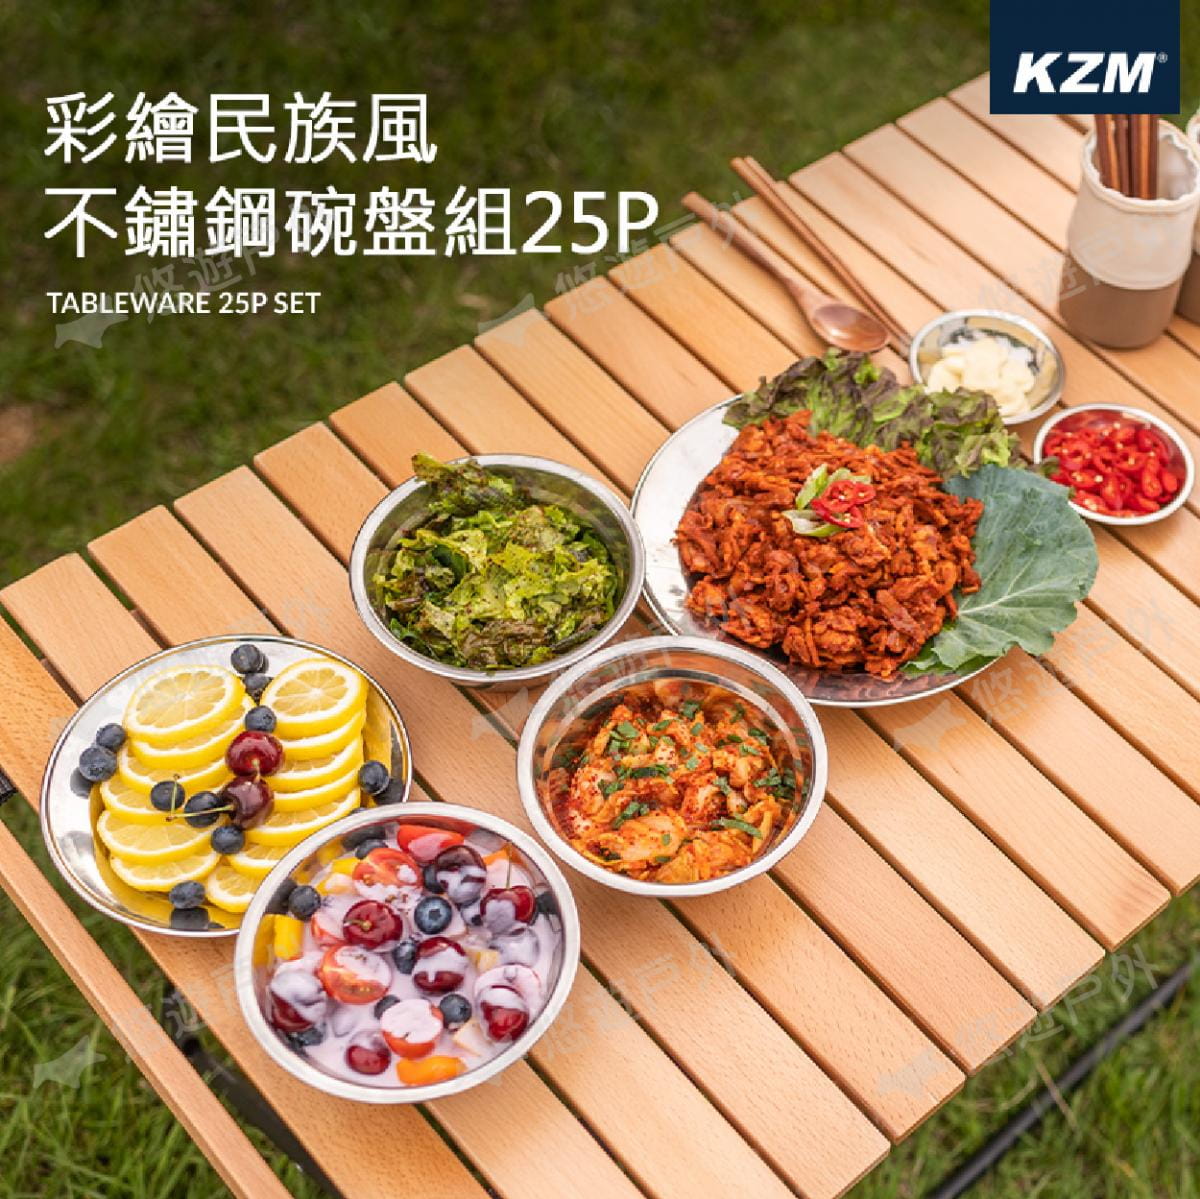 【KZM】彩繪民族風不鏽鋼碗盤組25P_K21T3K11 (悠遊戶外) 1